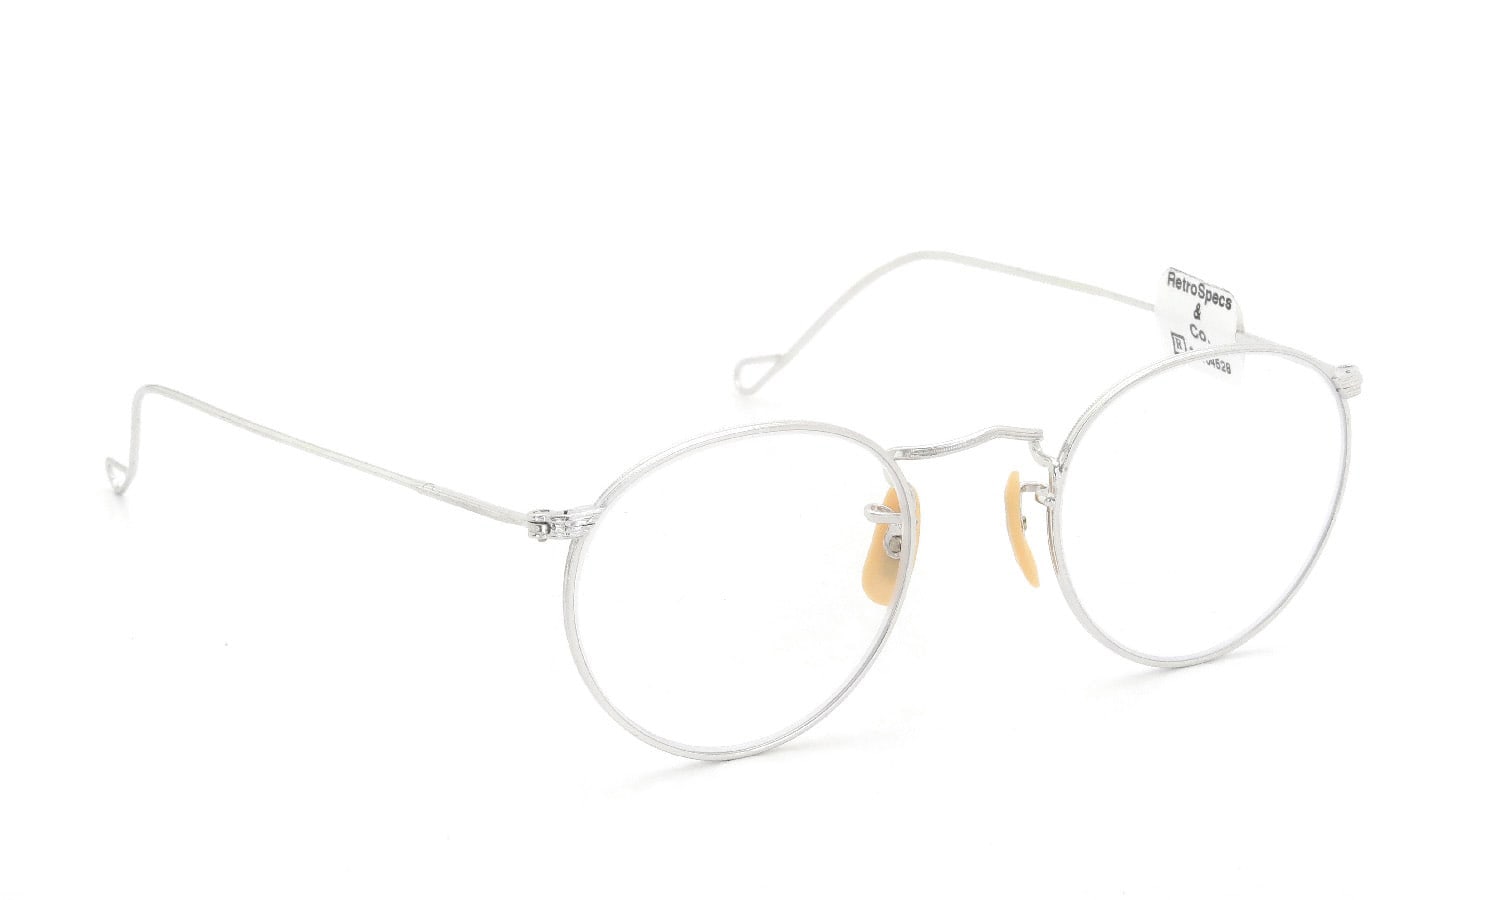 6,600円1930s full-vue 眼鏡